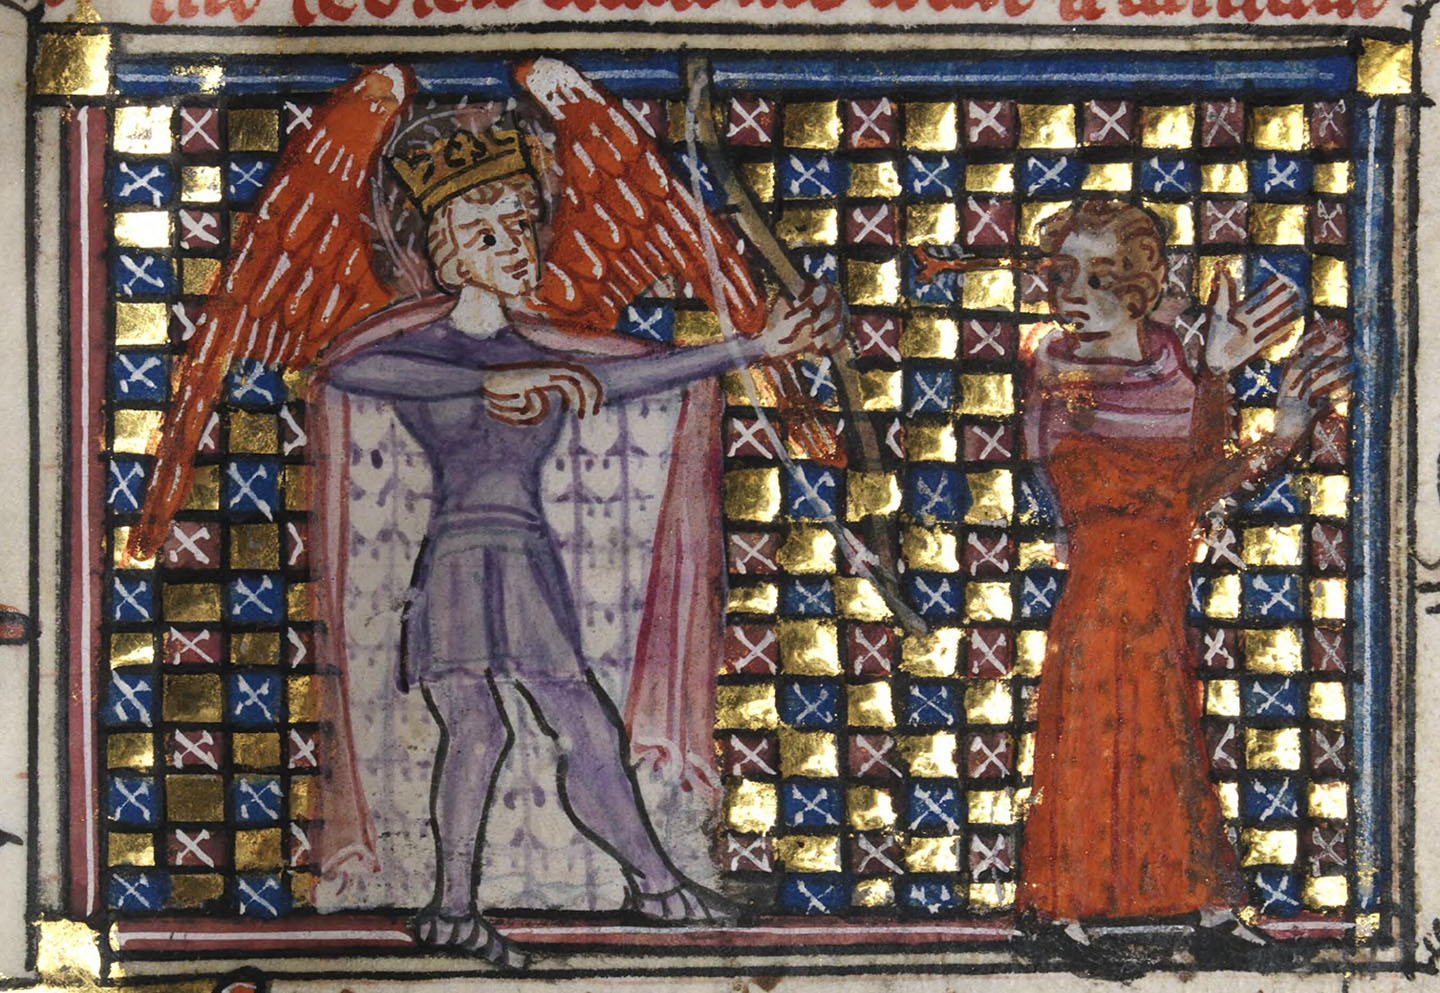 Thần Cupid bắn mũi tên vào một người đang yêu, hình ảnh sao chép từ một bản thảo có từ thế kỷ thứ 14 “Le Roman de la Rose” (Sự lãng mạn của Hoa hồng). Thếp vàng trên giấy da. Thư viện Quốc gia xứ Wales, Aberystwyth, xứ Wales. (Ảnh: Tài liệu công cộng)